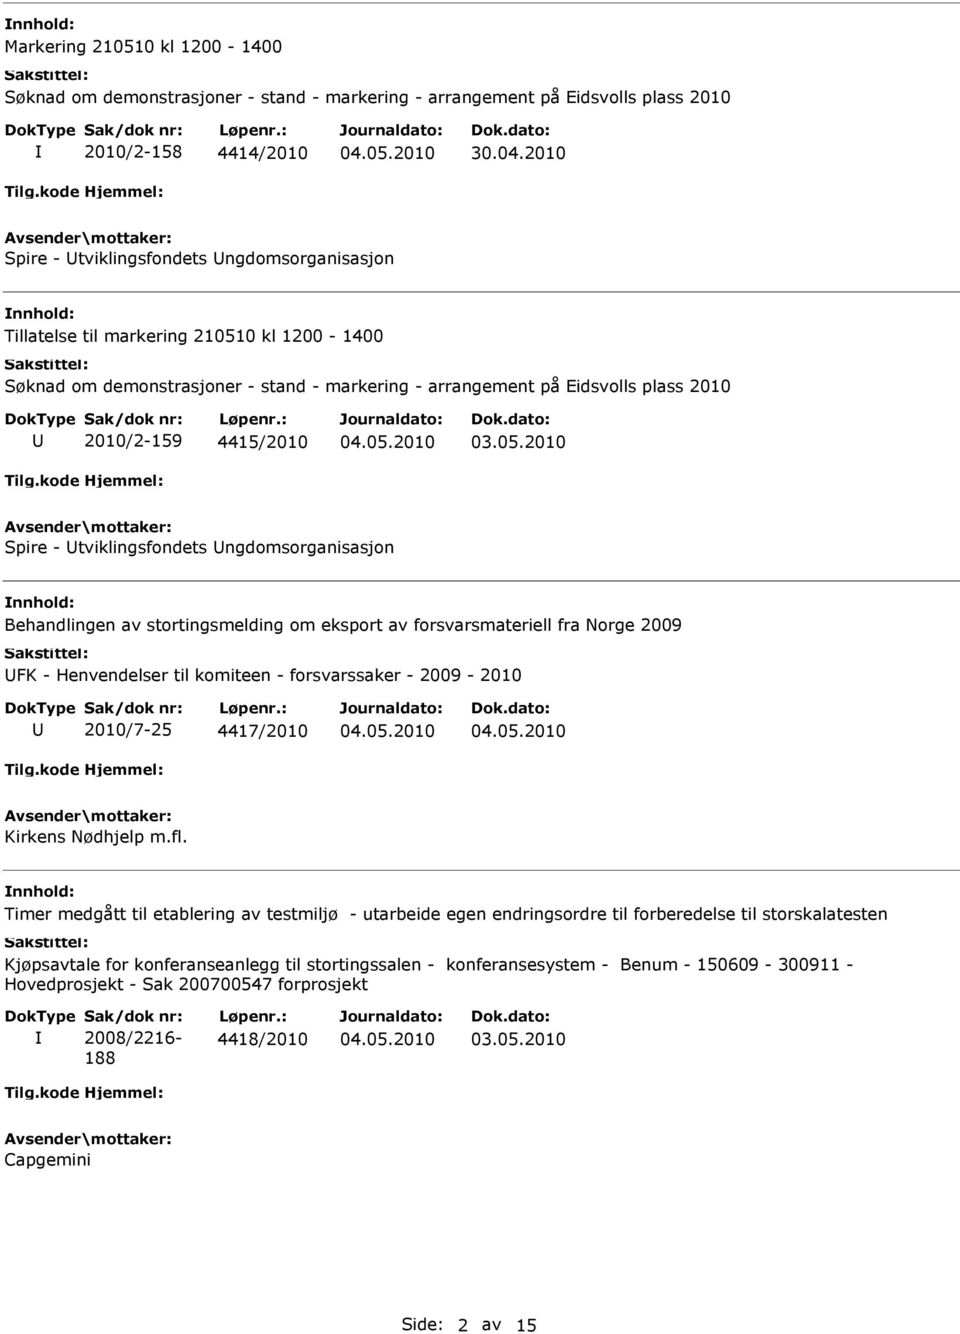 Spire - tviklingsfondets ngdomsorganisasjon Behandlingen av stortingsmelding om eksport av forsvarsmateriell fra Norge 2009 FK - Henvendelser til komiteen - forsvarssaker - 2009-2010 2010/7-25